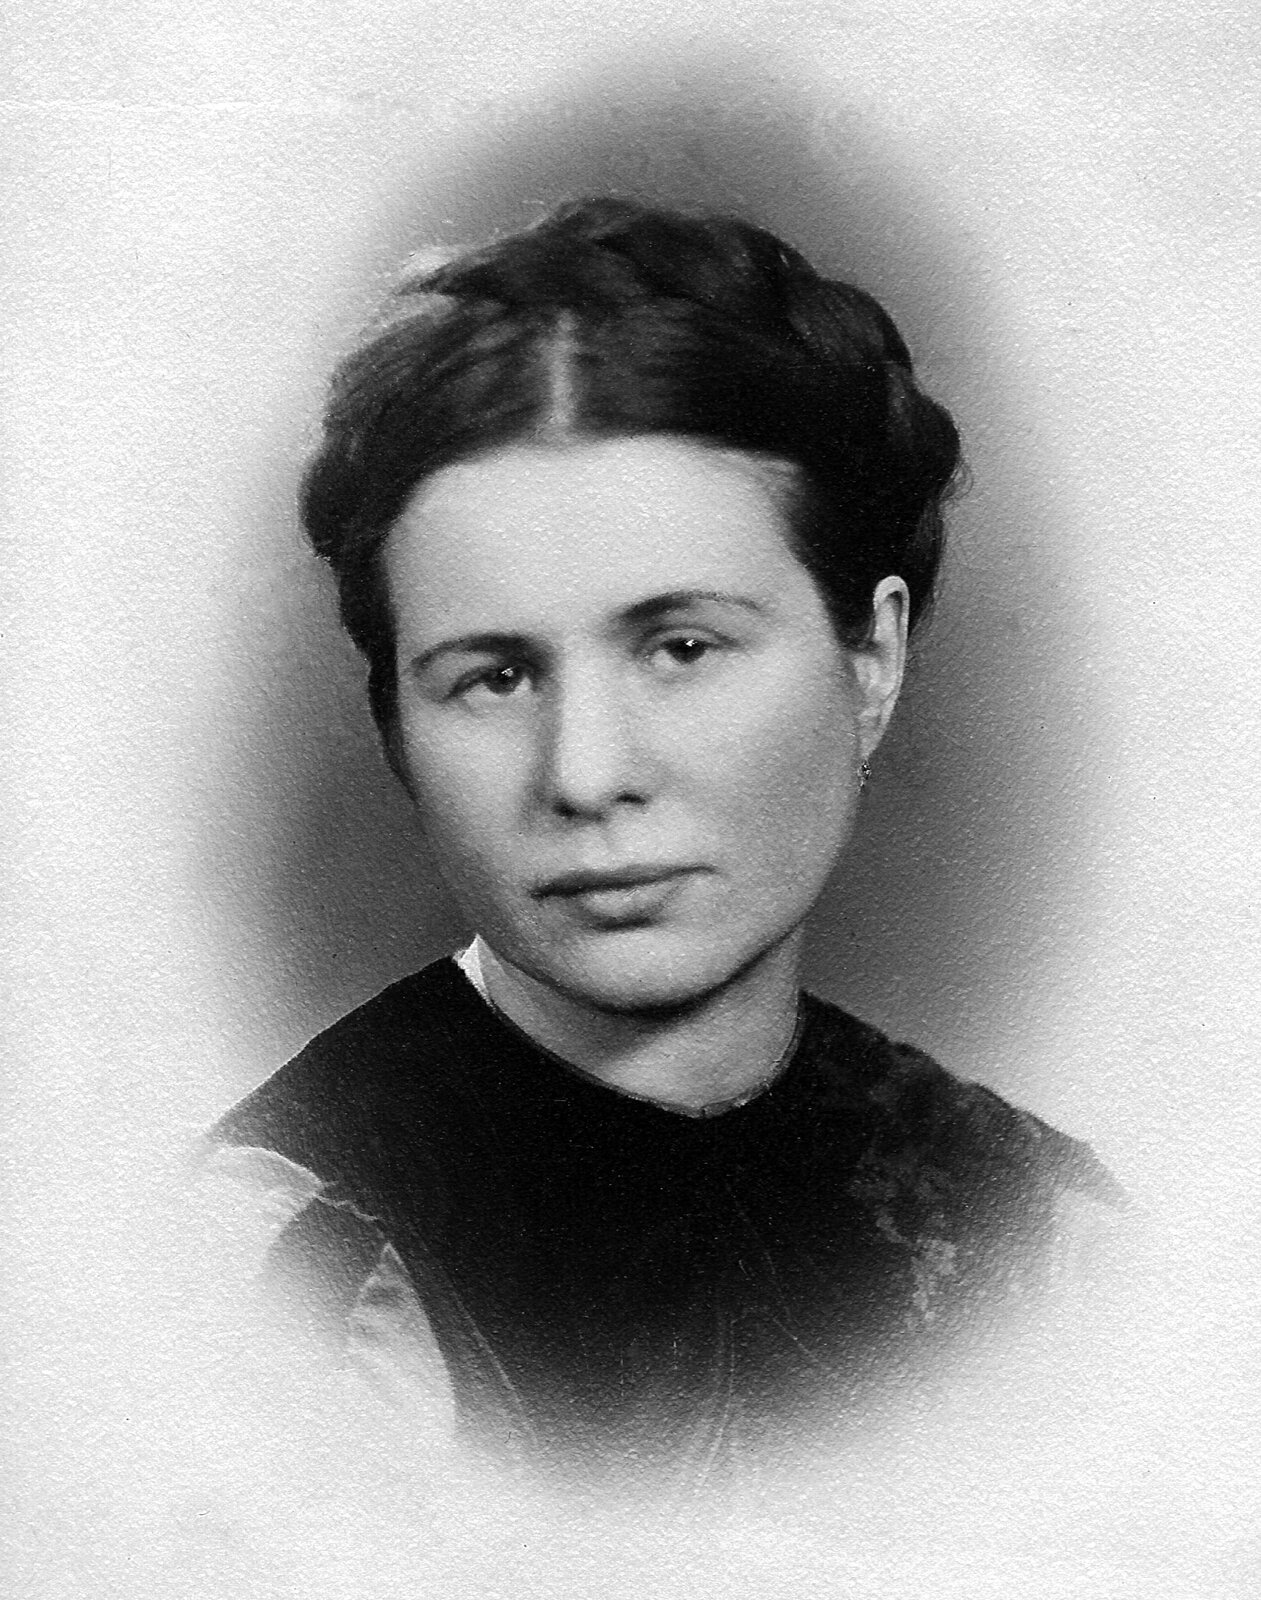  Czarno‑biała fotografia przedstawia portret młodej kobiety. Ma poważny wyraz twarzy, warkocz opleciony wokół głowy i bluzkę z dużym, ciemnym kołnierzem.